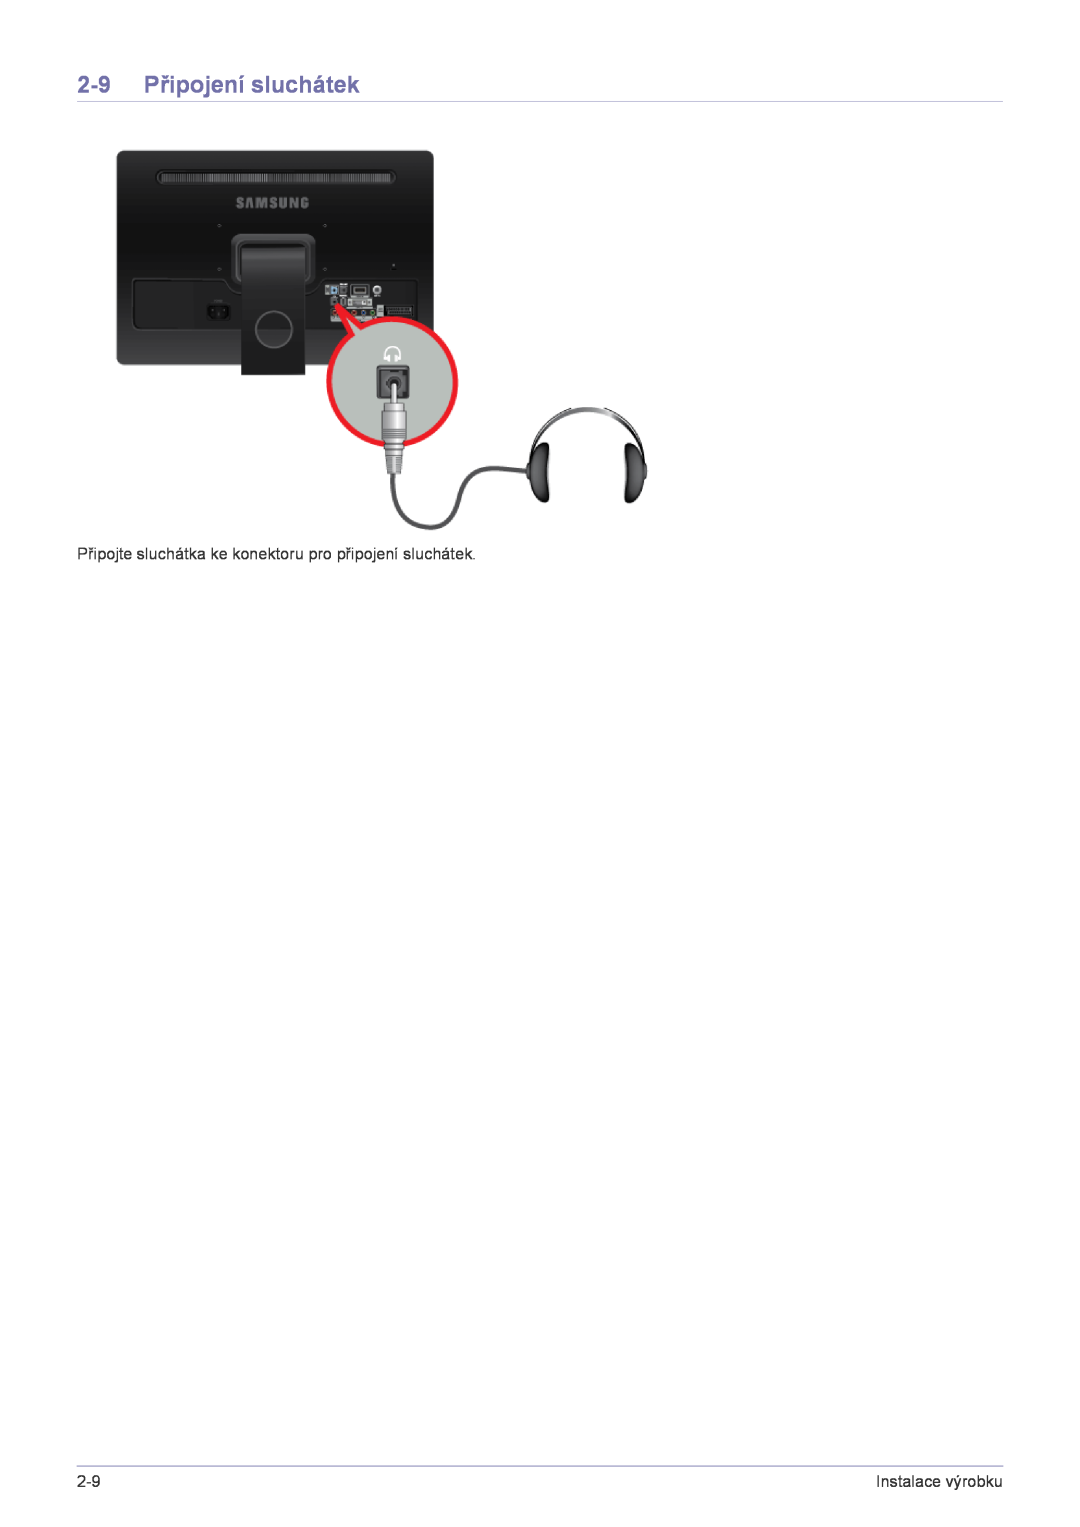 Samsung LS22FMDGF/EN manual 2-9 Připojení sluchátek, Připojte sluchátka ke konektoru pro připojení sluchátek 